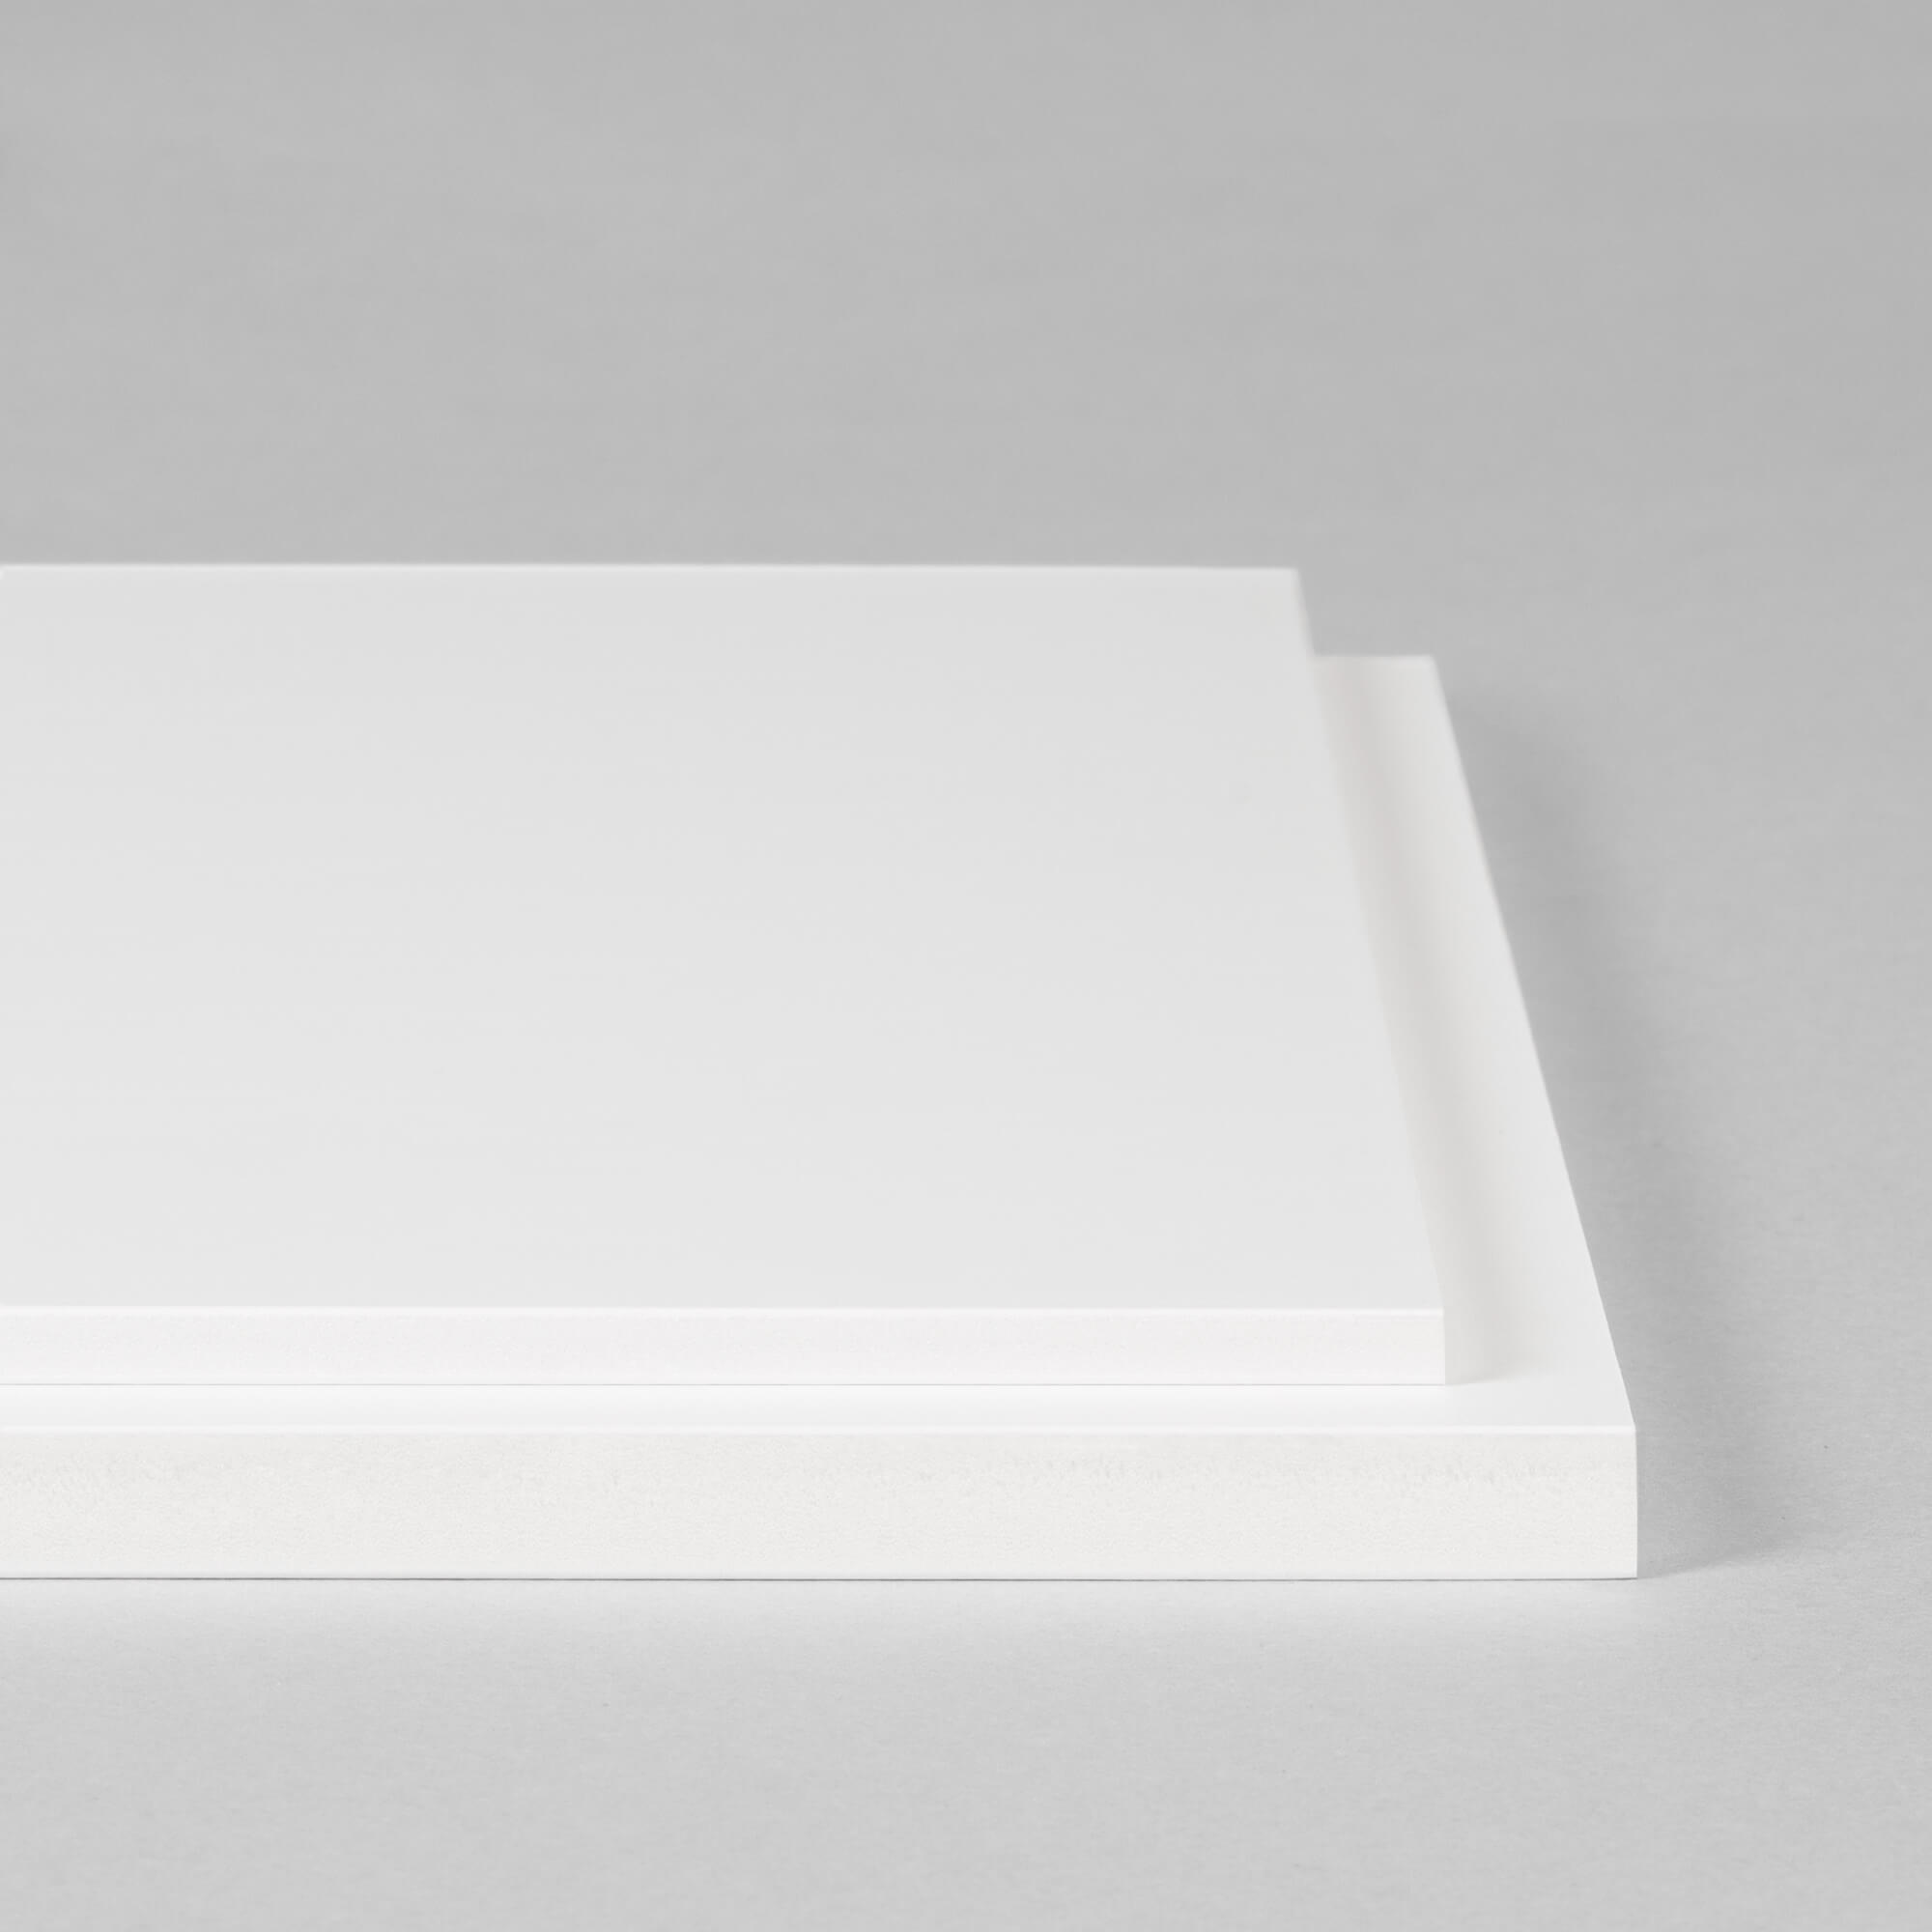 La Casa del Artesano-Carton pluma de 5mm. Foamboard SINOFIRM SFH006 de  48*84cms color blanco